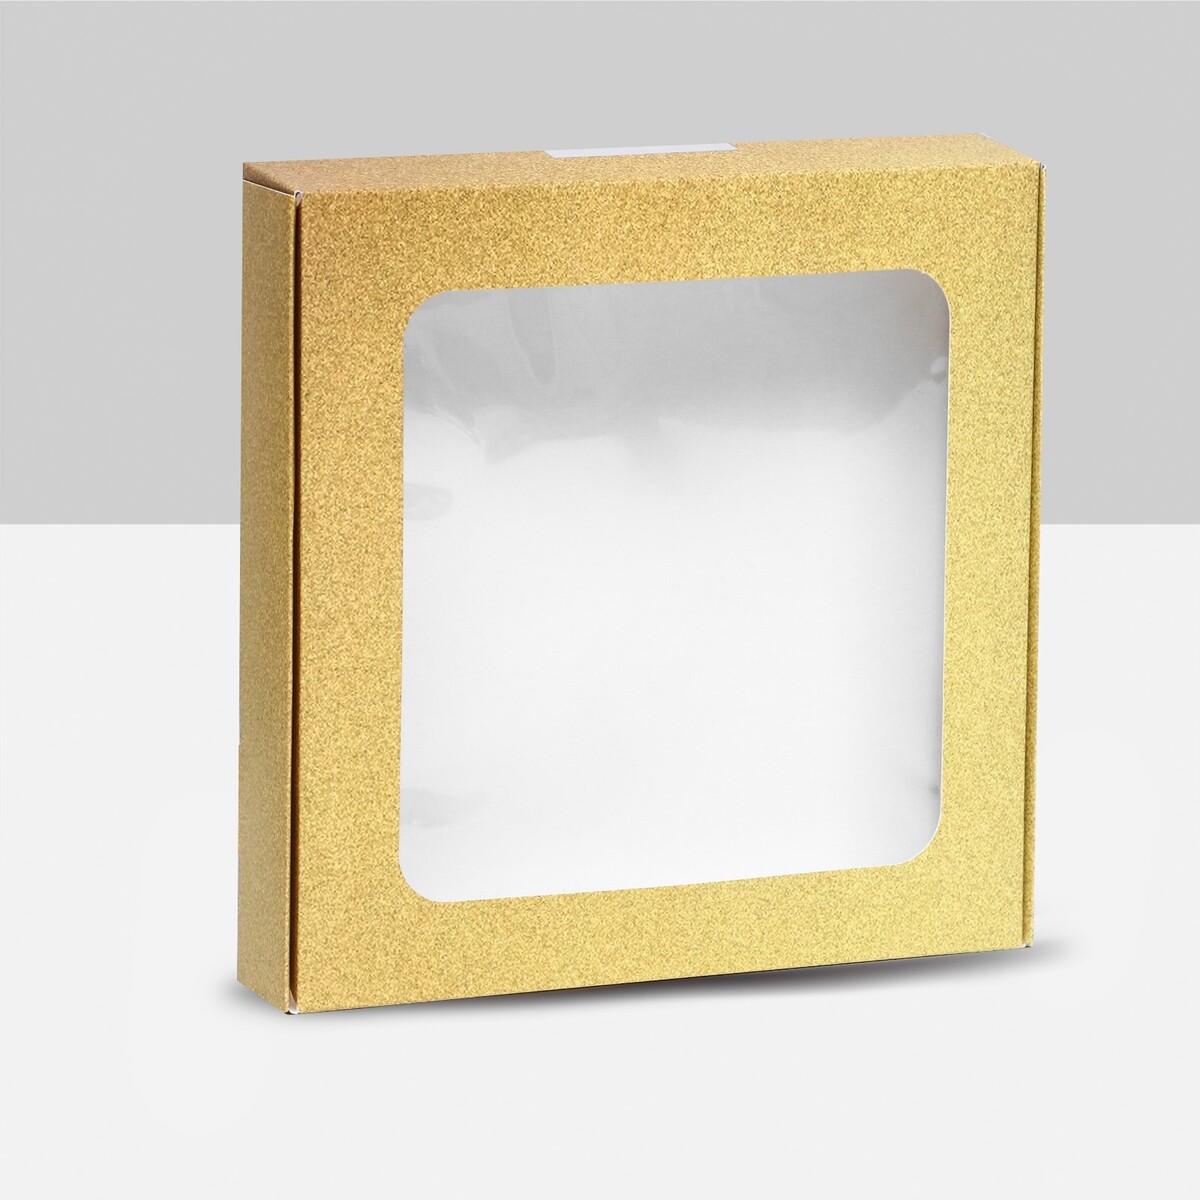 Коробка самосборная, с окном, золотая, 16 х 16 х 3 см коробка самосборная с окном красная 16 х 16 х 3 см